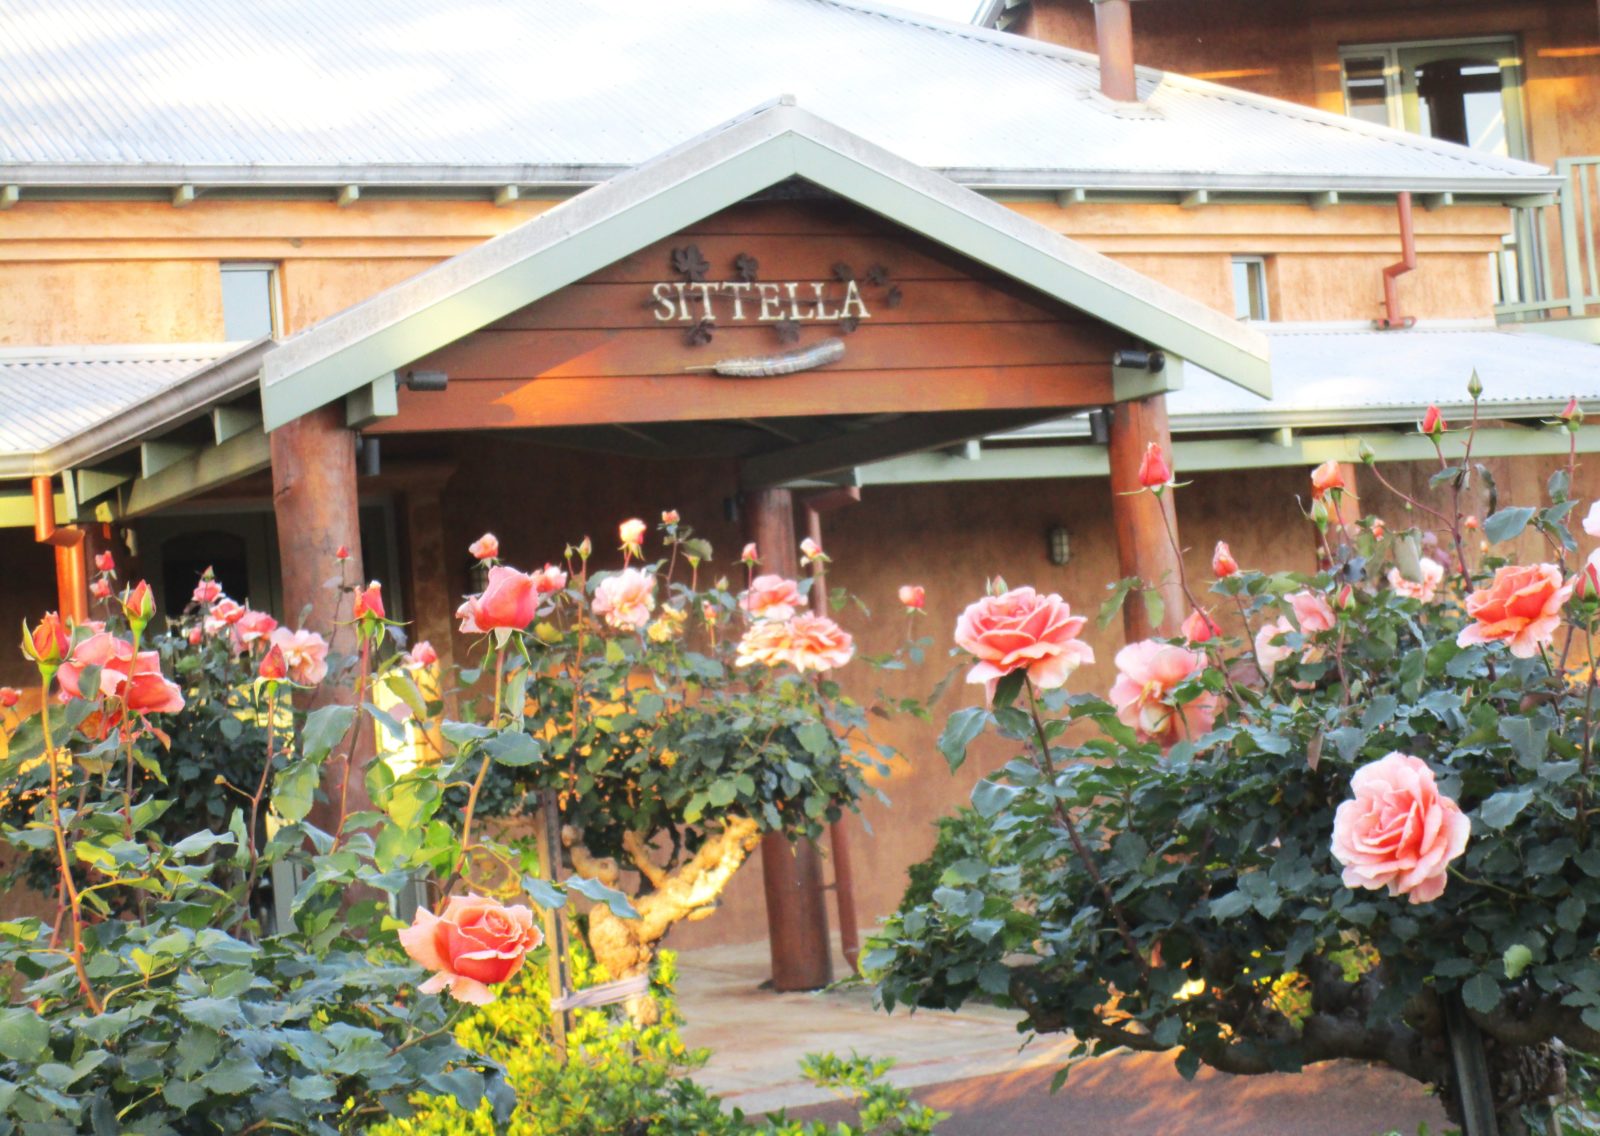 Sittella Winery & Restaurant, Herne Hill, Western Australia